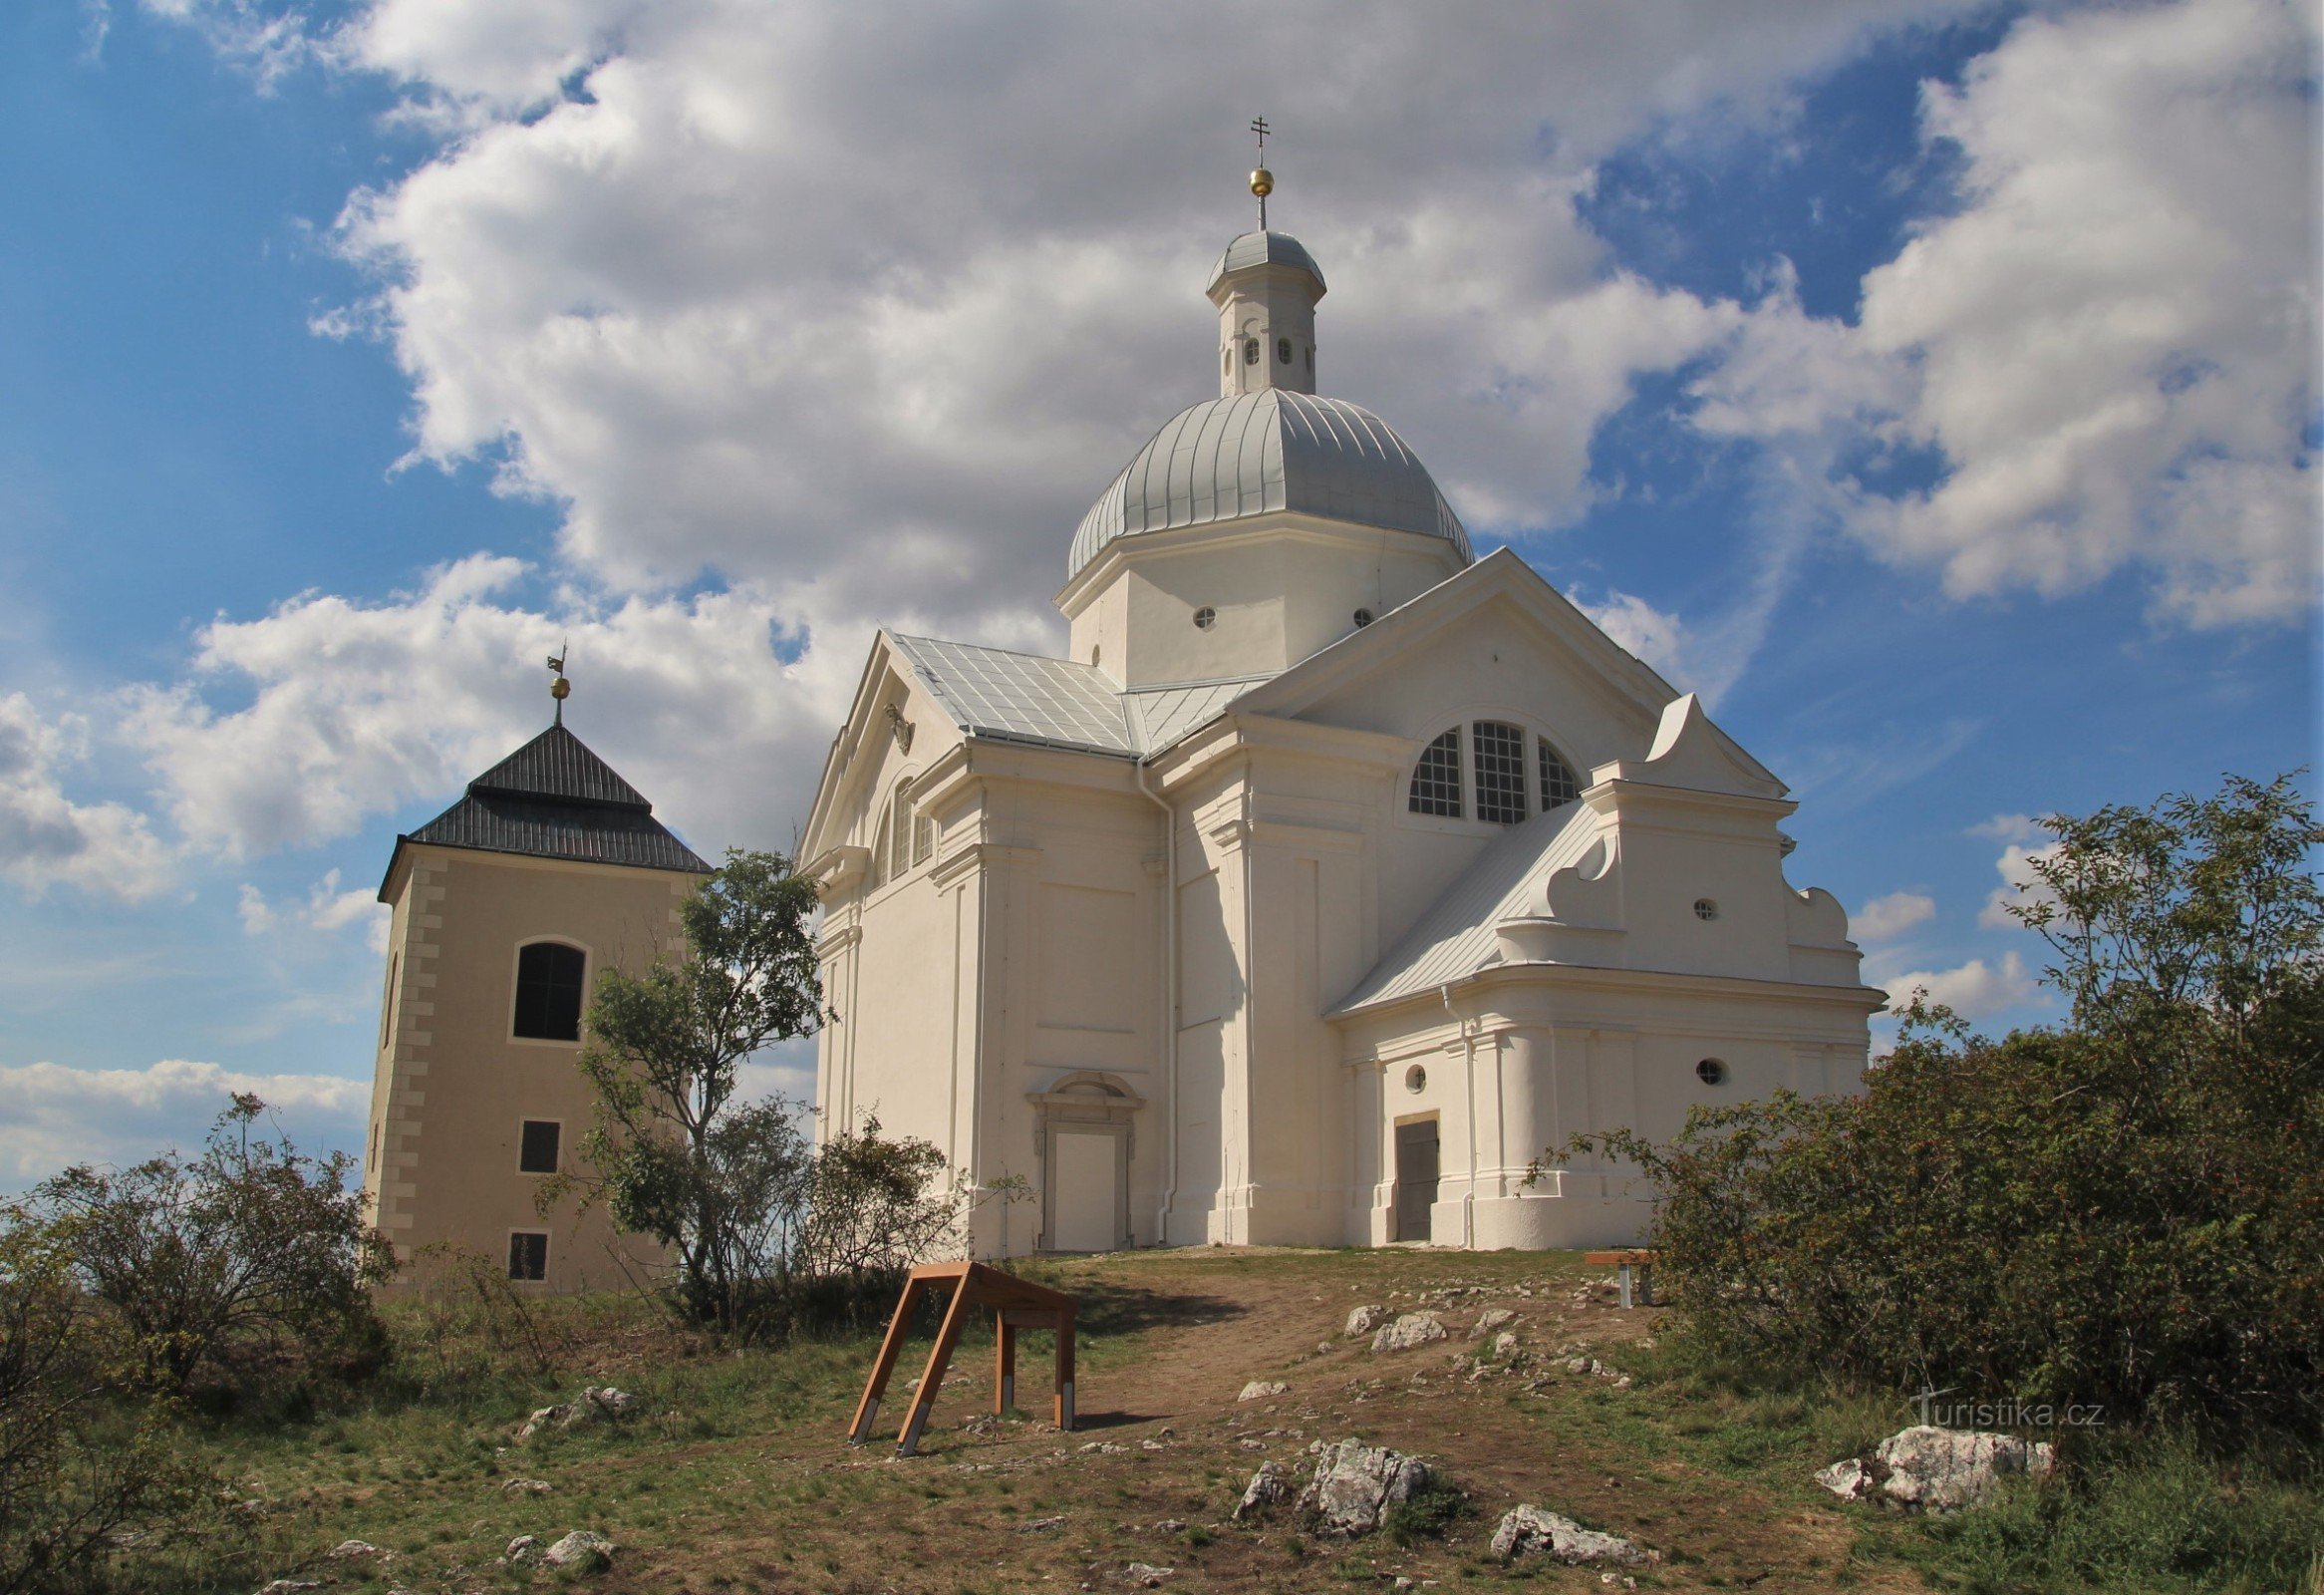 Kerk van St. Sebastiaan